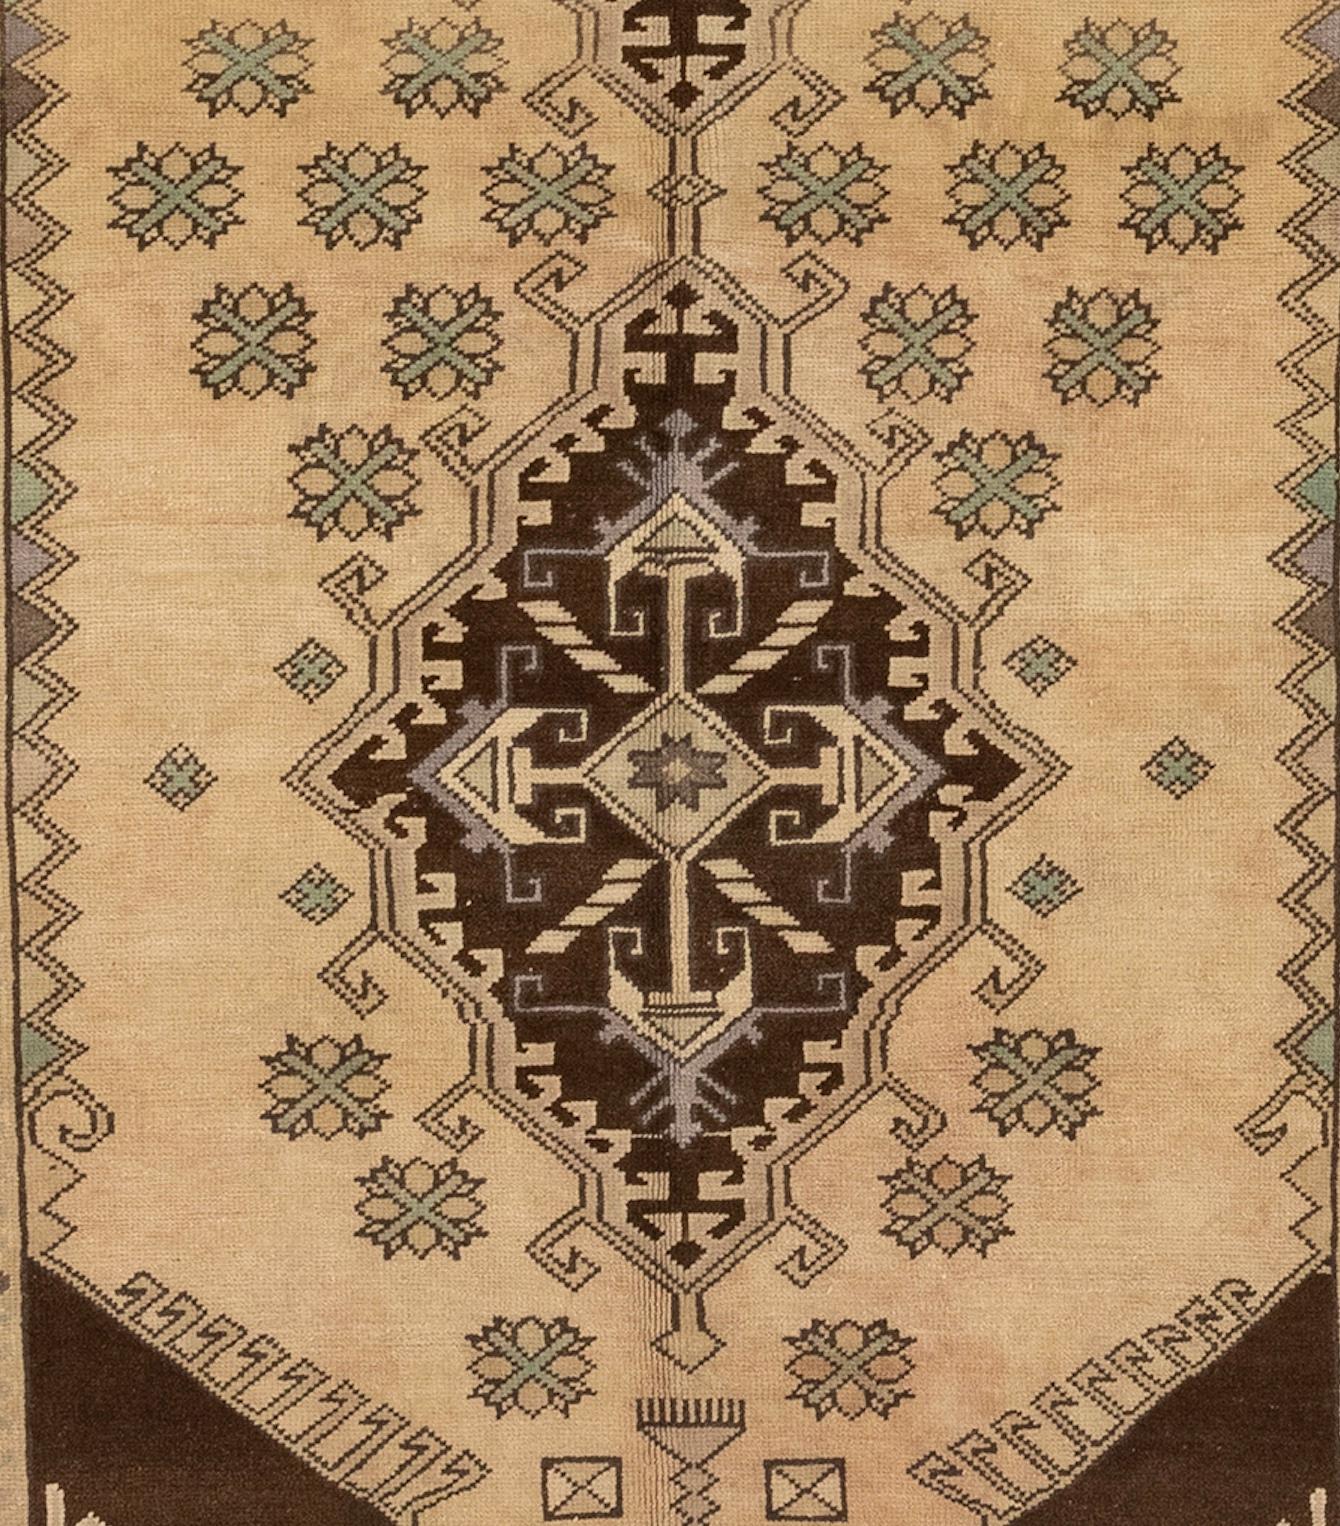 Vintage Oushak-Teppiche sind eine Art von handgewebten Teppichen, die ihren Ursprung in der Türkei haben. Diese Teppiche sind für ihre weichen, gedeckten Farben bekannt, wobei Beige und Hellbraun besonders beliebt sind. Vintage-Oushak-Teppiche